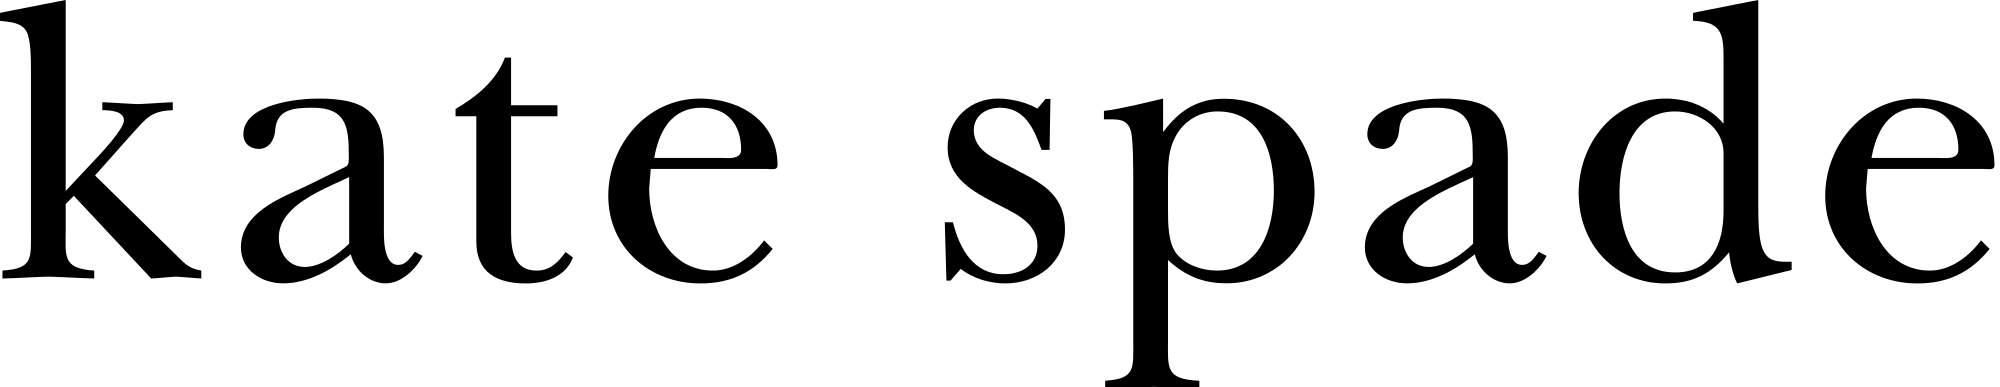 Open - Kate Spade Logo Cover (2000x387)